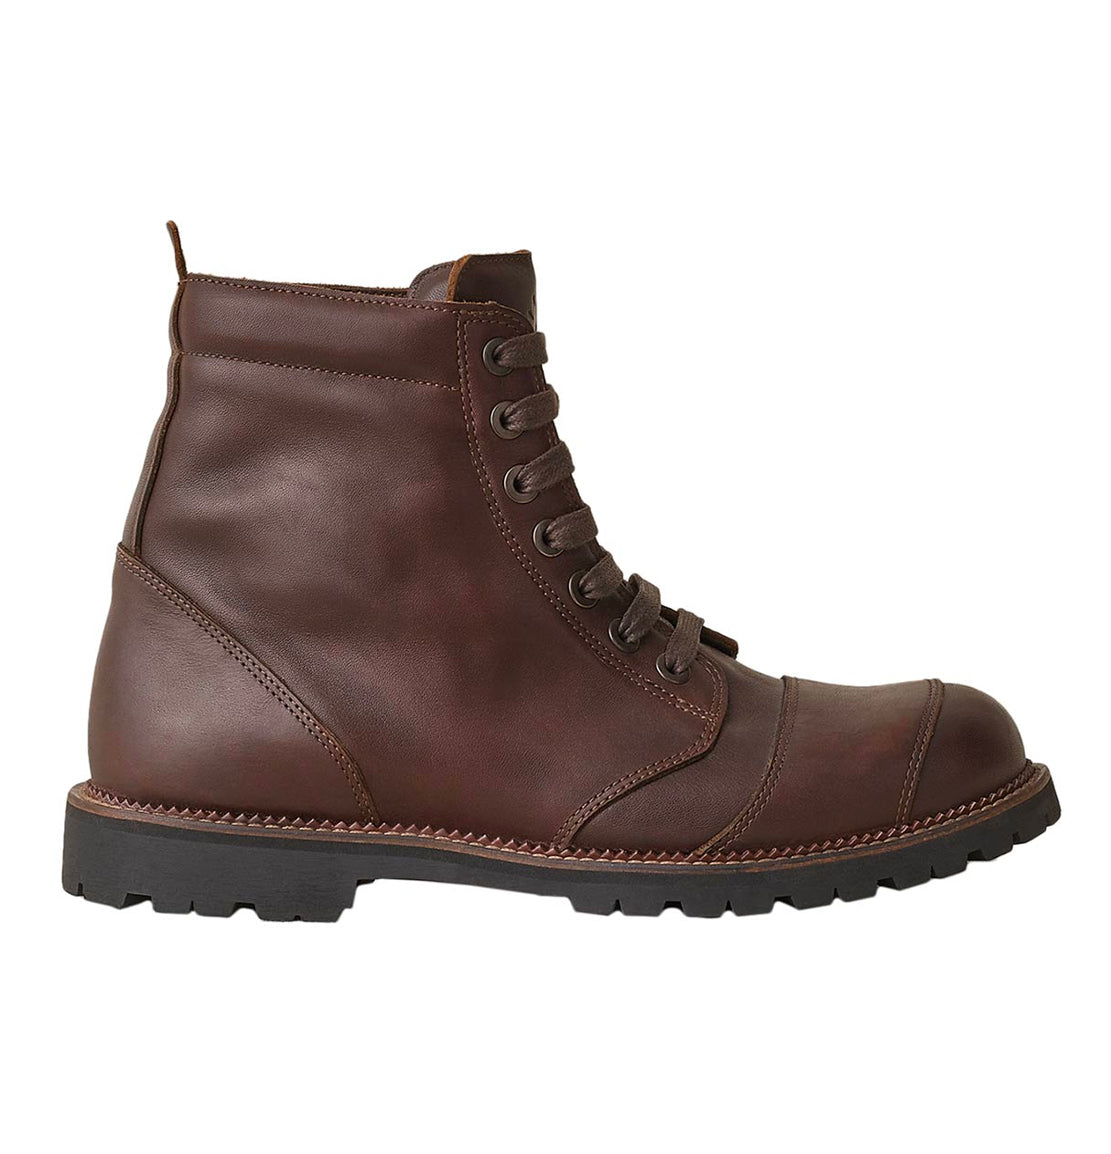 Belstaff resolve brown boots